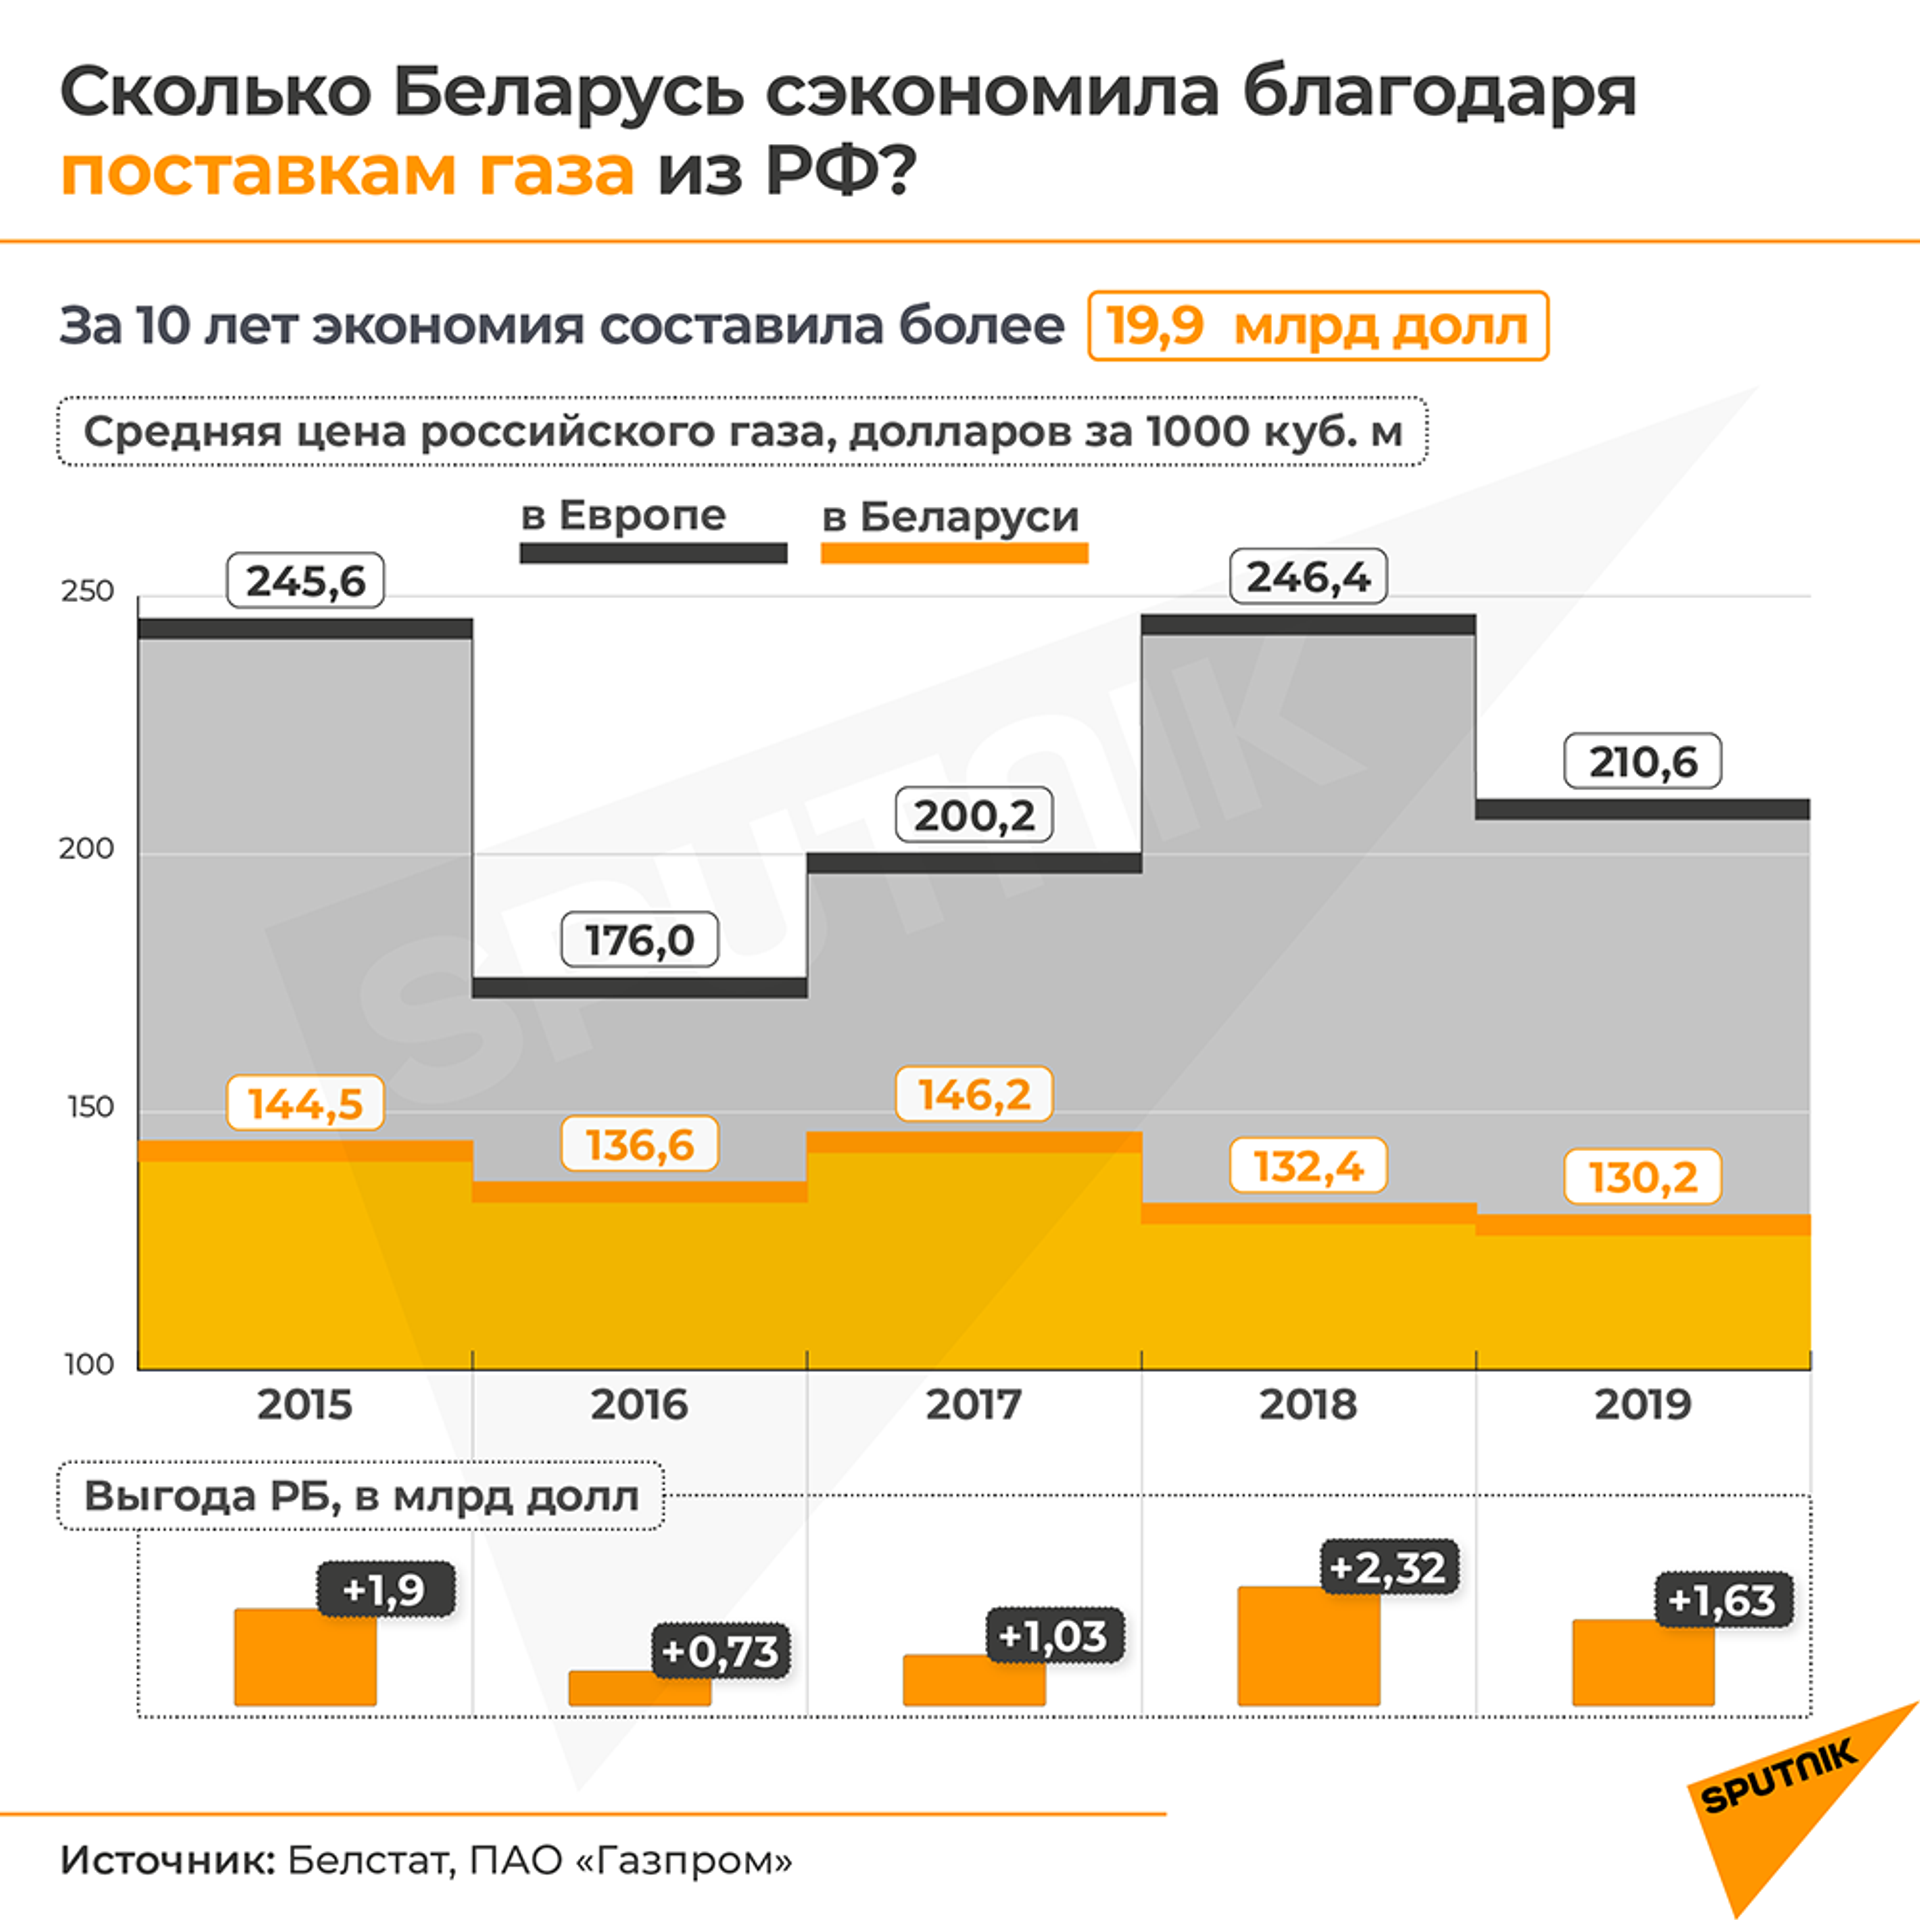 Проект соглашения об общем рынке газа разработан в ЕАЭС - Sputnik Беларусь, 1920, 26.04.2021